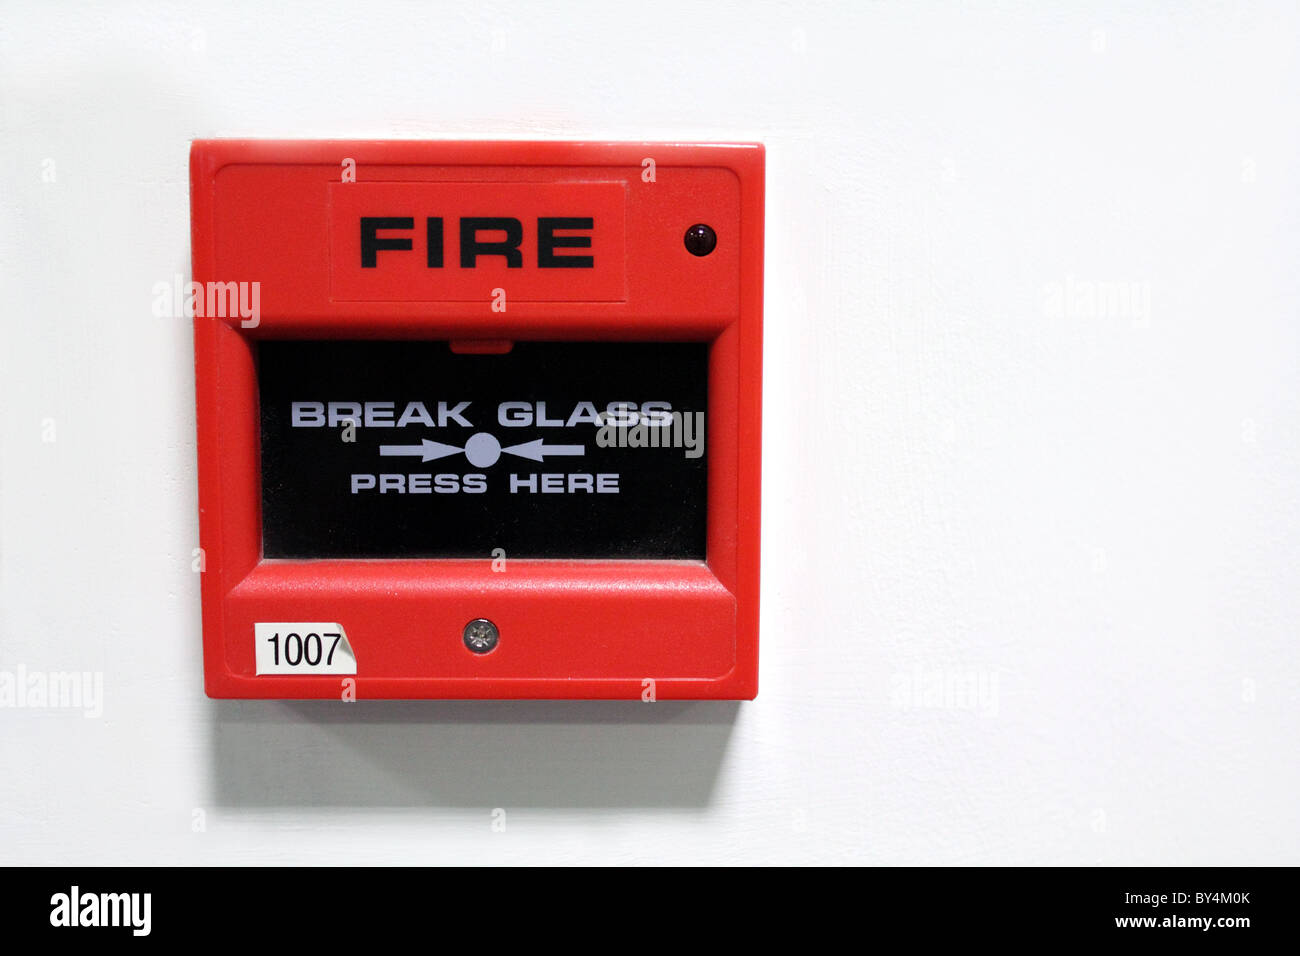 Fire Alarm PNG Images, Transparent Fire Alarm Image Download - PNGitem